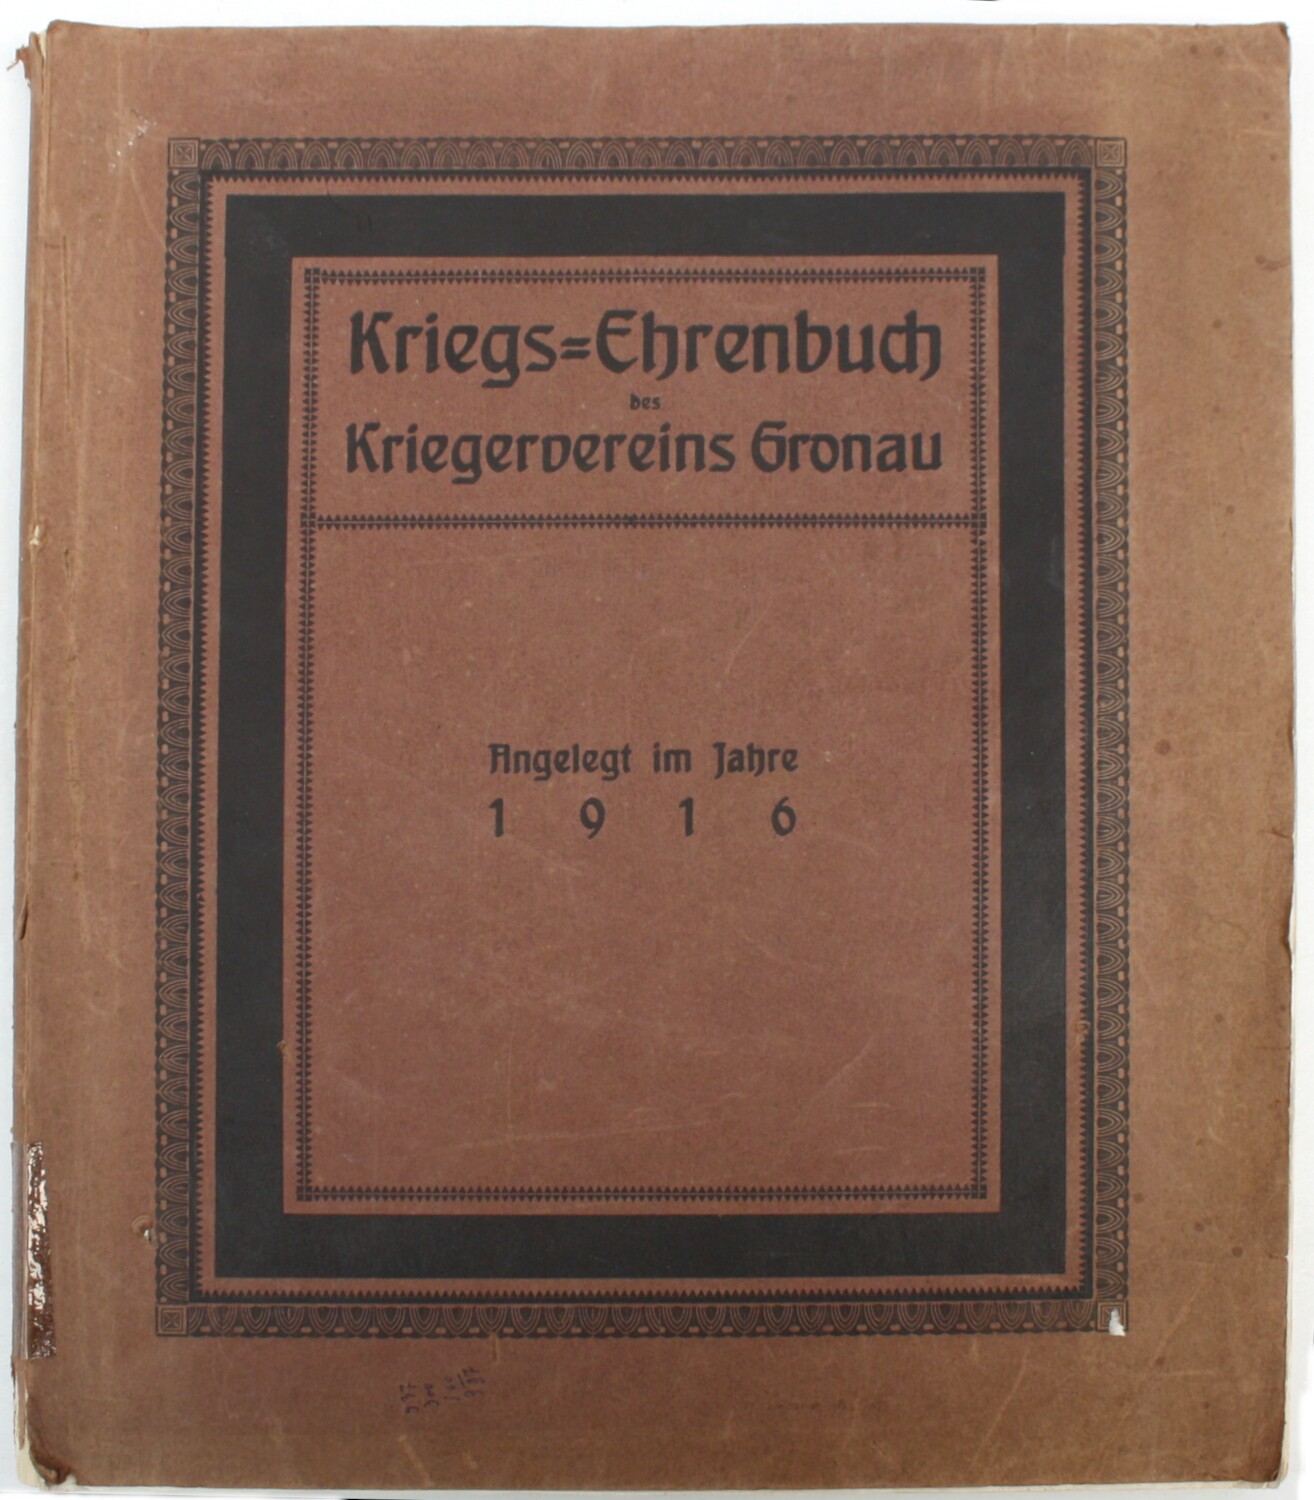 Kriegs-Ehrenbuch des Kriegervereins Gronau (Drilandmuseum CC BY-NC-SA)